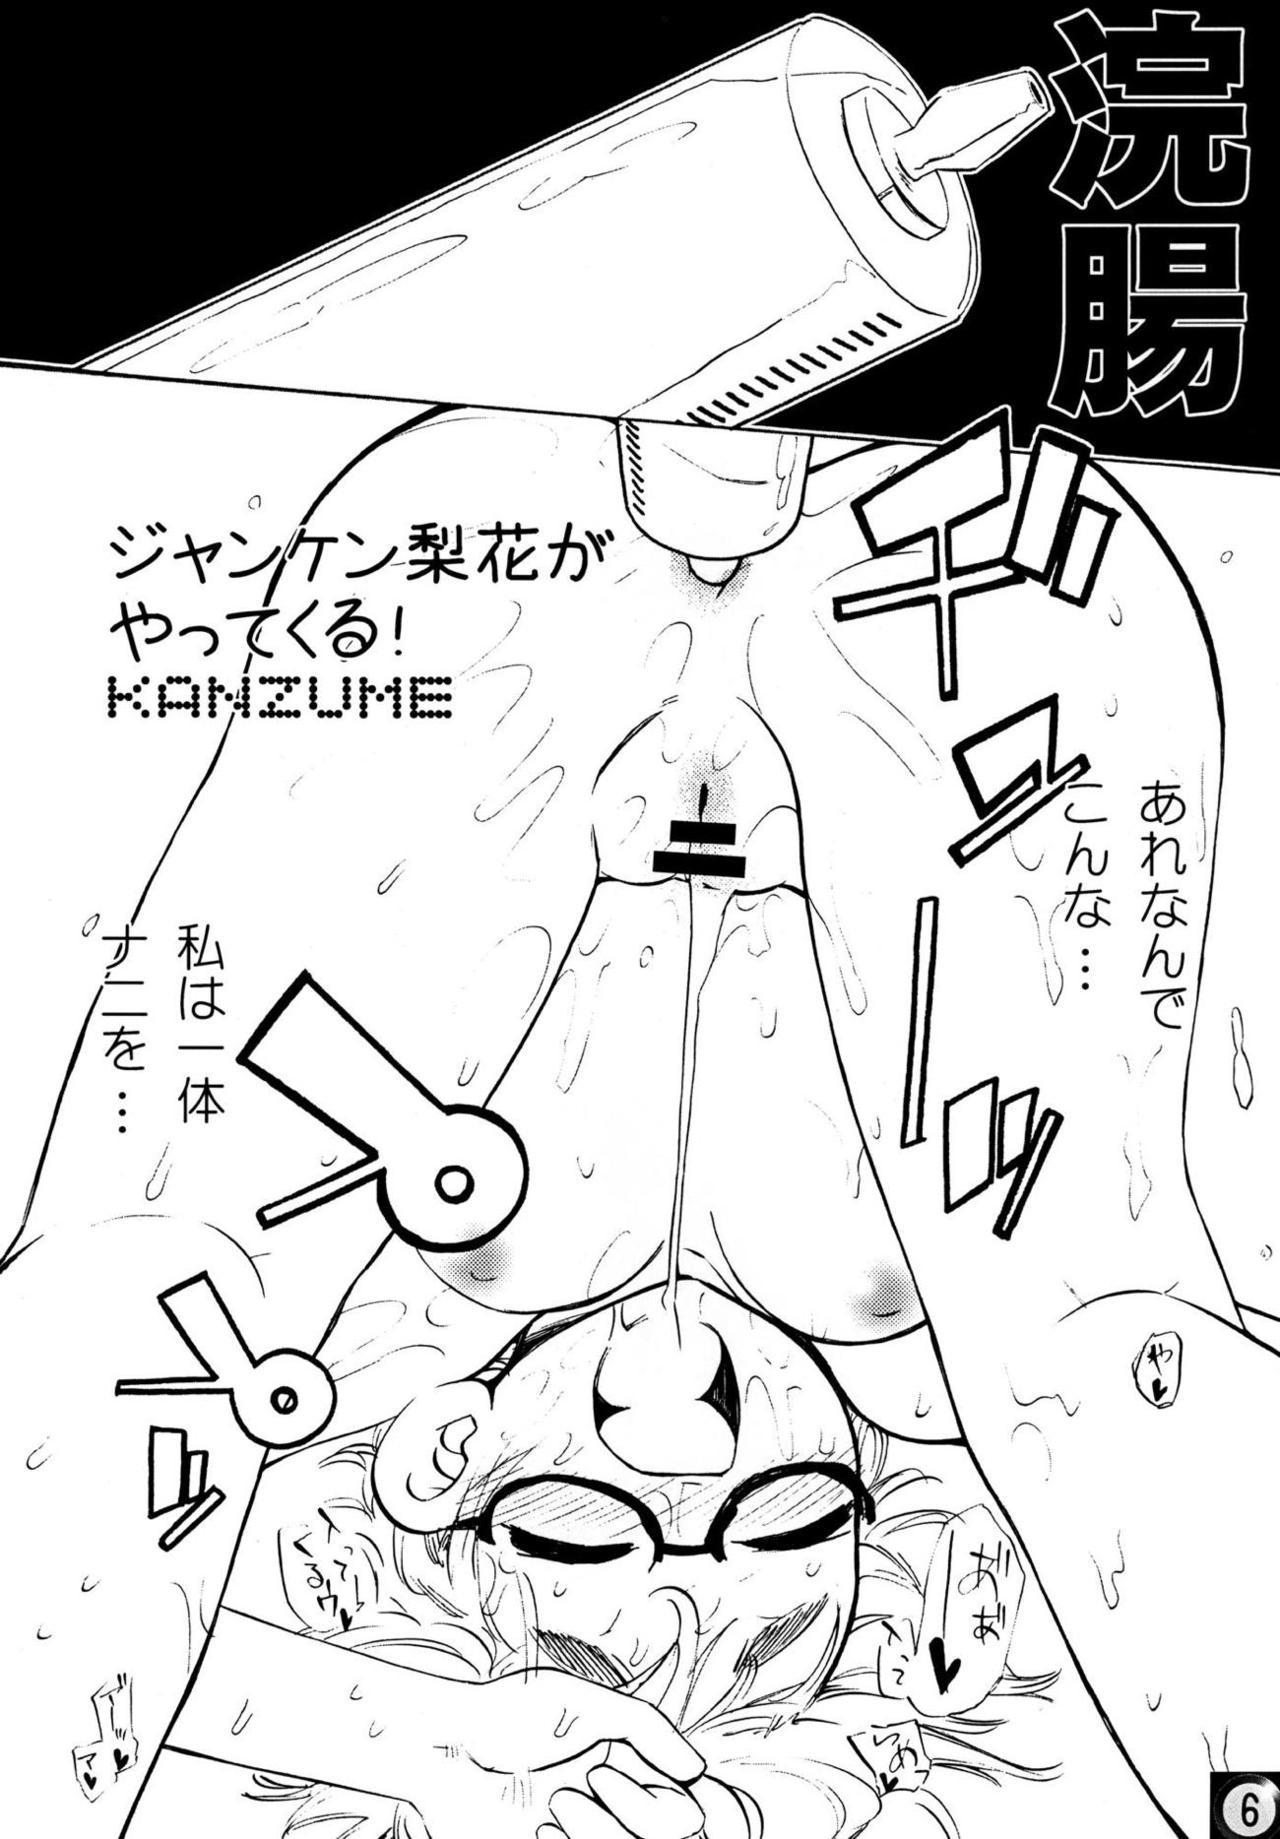 Anal Licking Ecchi ja Nai to Ikenai to Omoimasu!! - Higurashi no naku koro ni Tall - Page 5